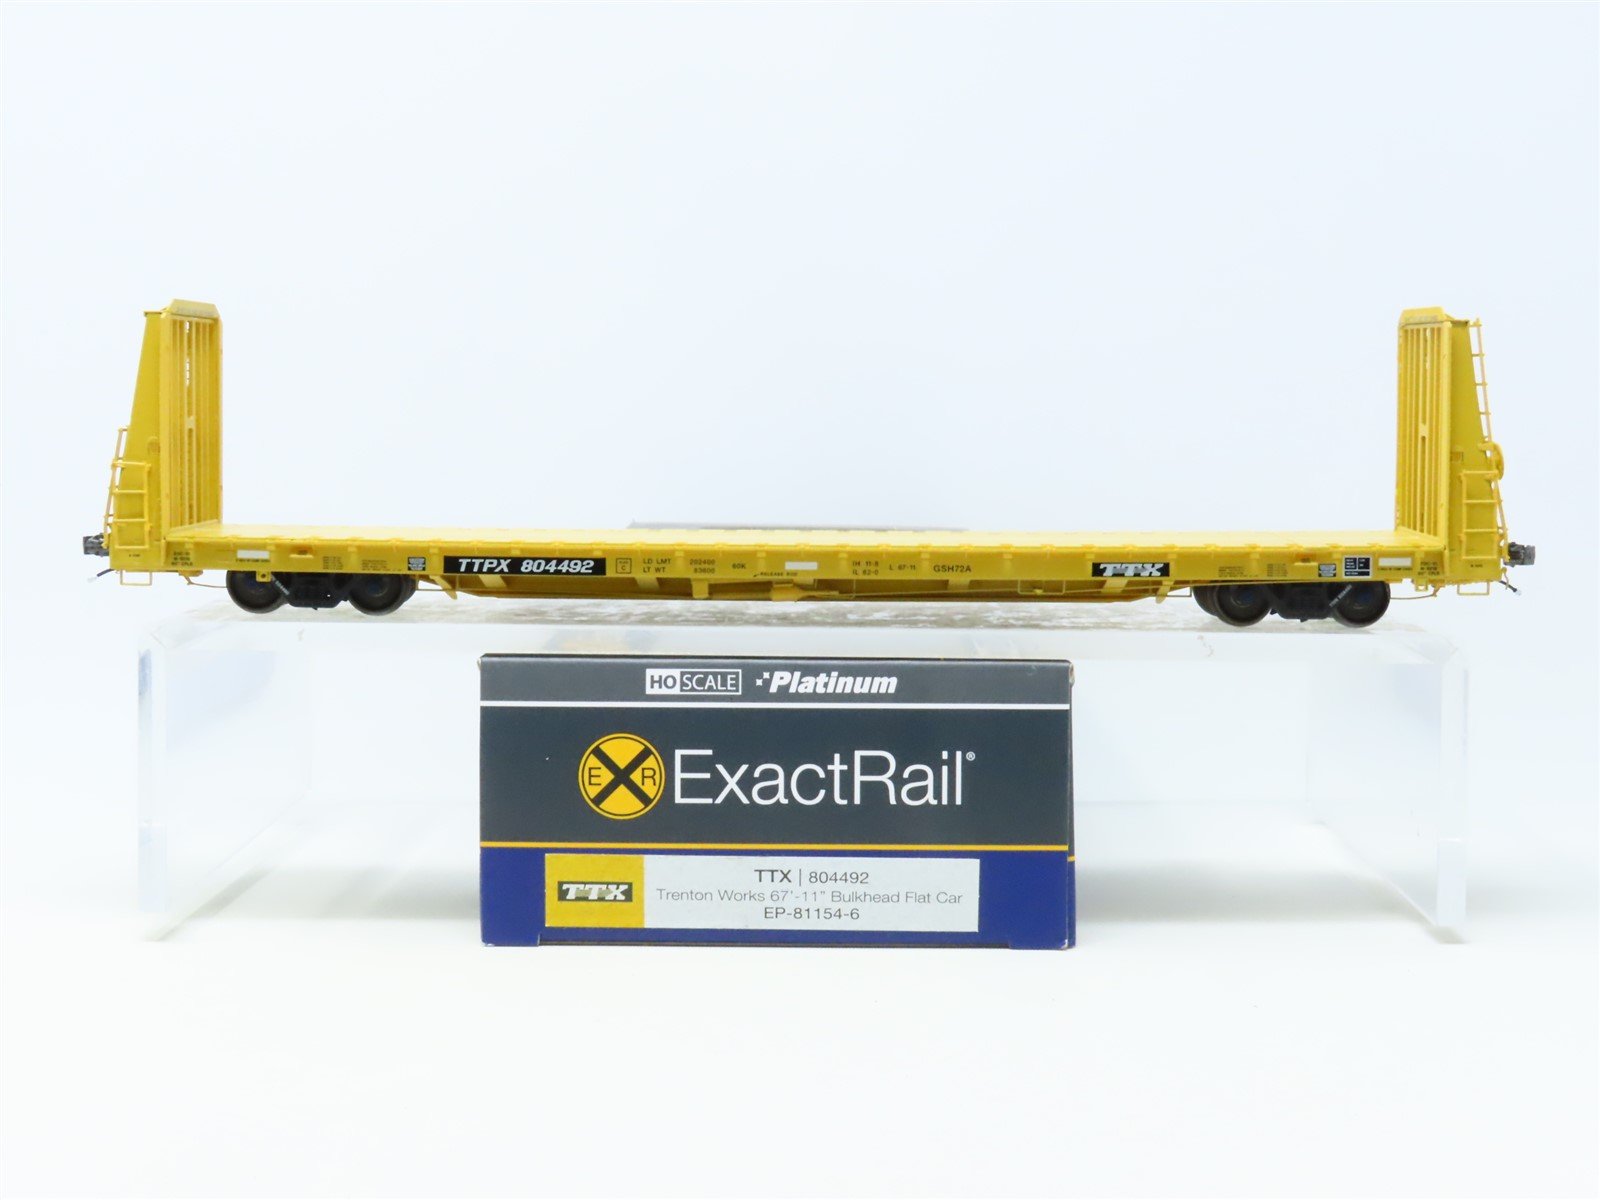 HO ExactRail Platinum #EP- 81154-6 TTPX TTX Trenton Works Bulkhead Flat Car